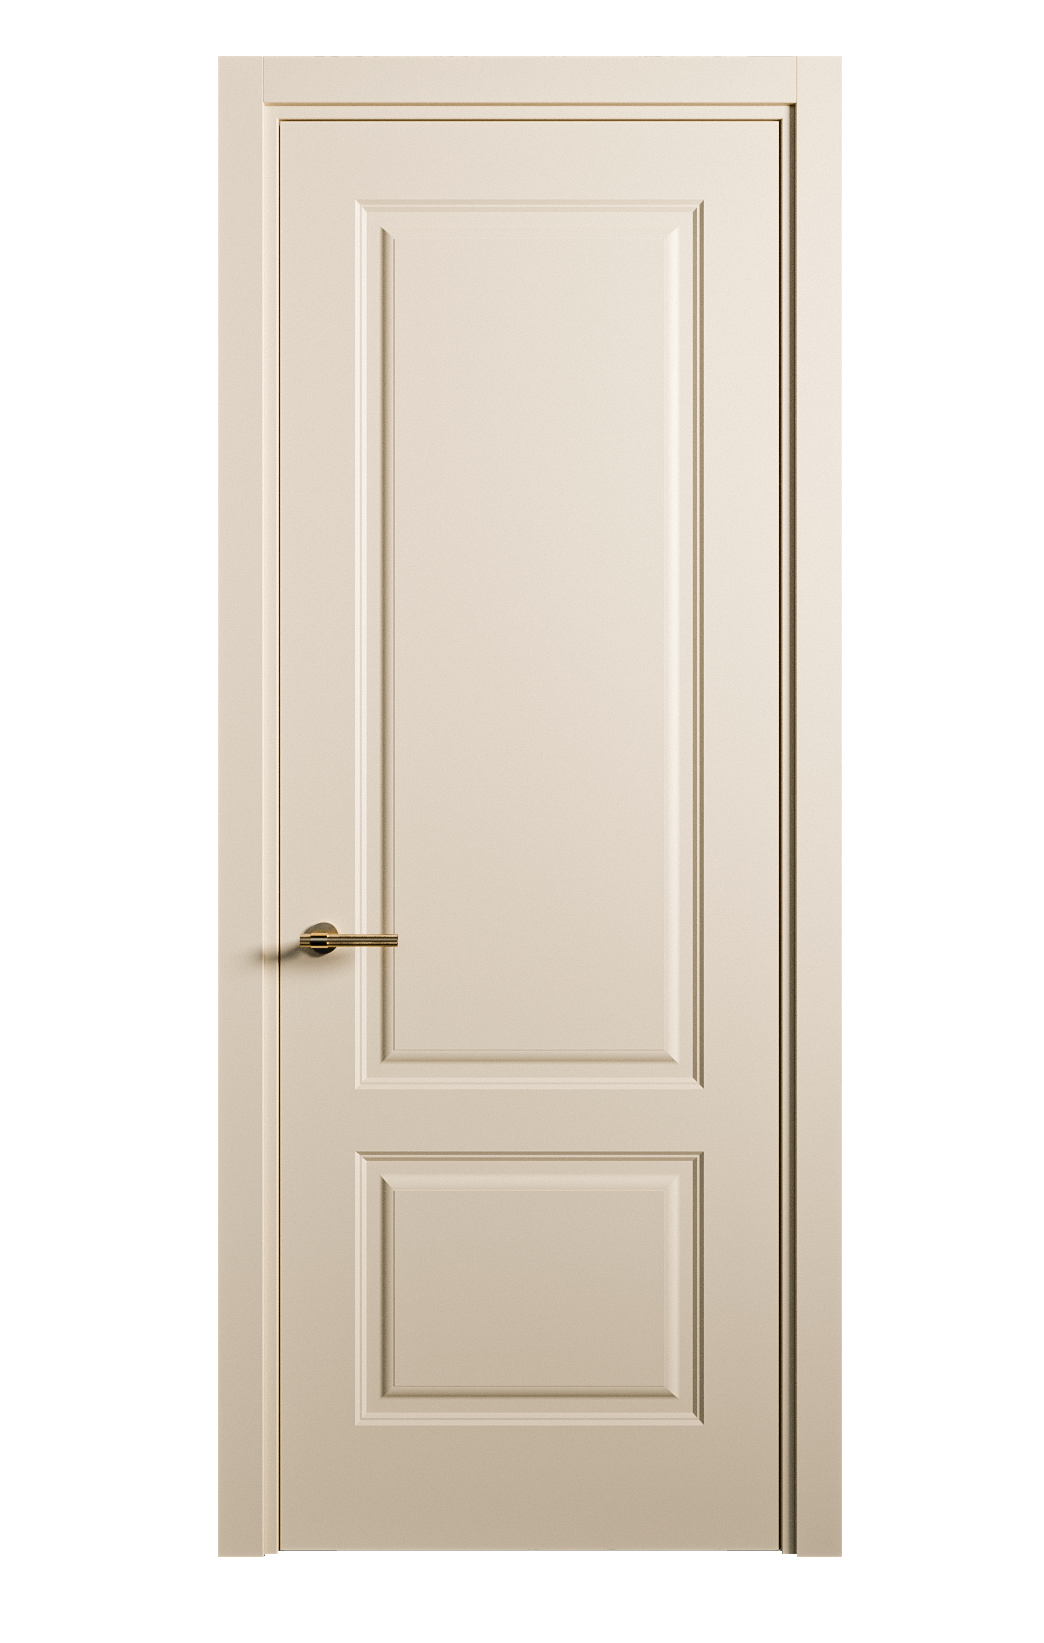 Межкомнатная дверь Вита-1 глухая эмаль ral 1015 26296